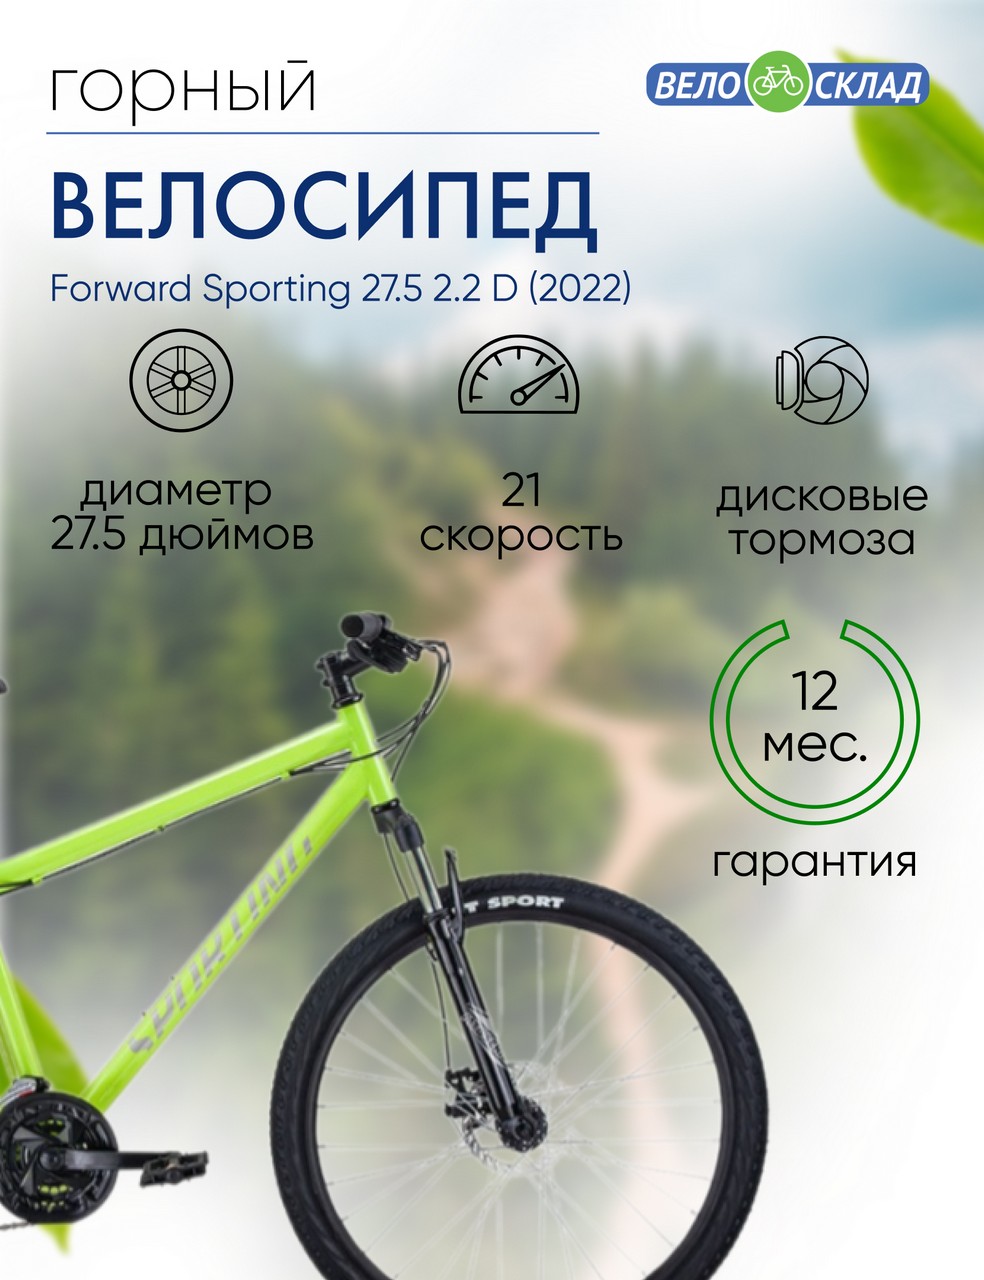 Горный велосипед Forward Sporting 27.5 2.2 D, год 2022, цвет Зеленый-Серебристый, ростовка 17